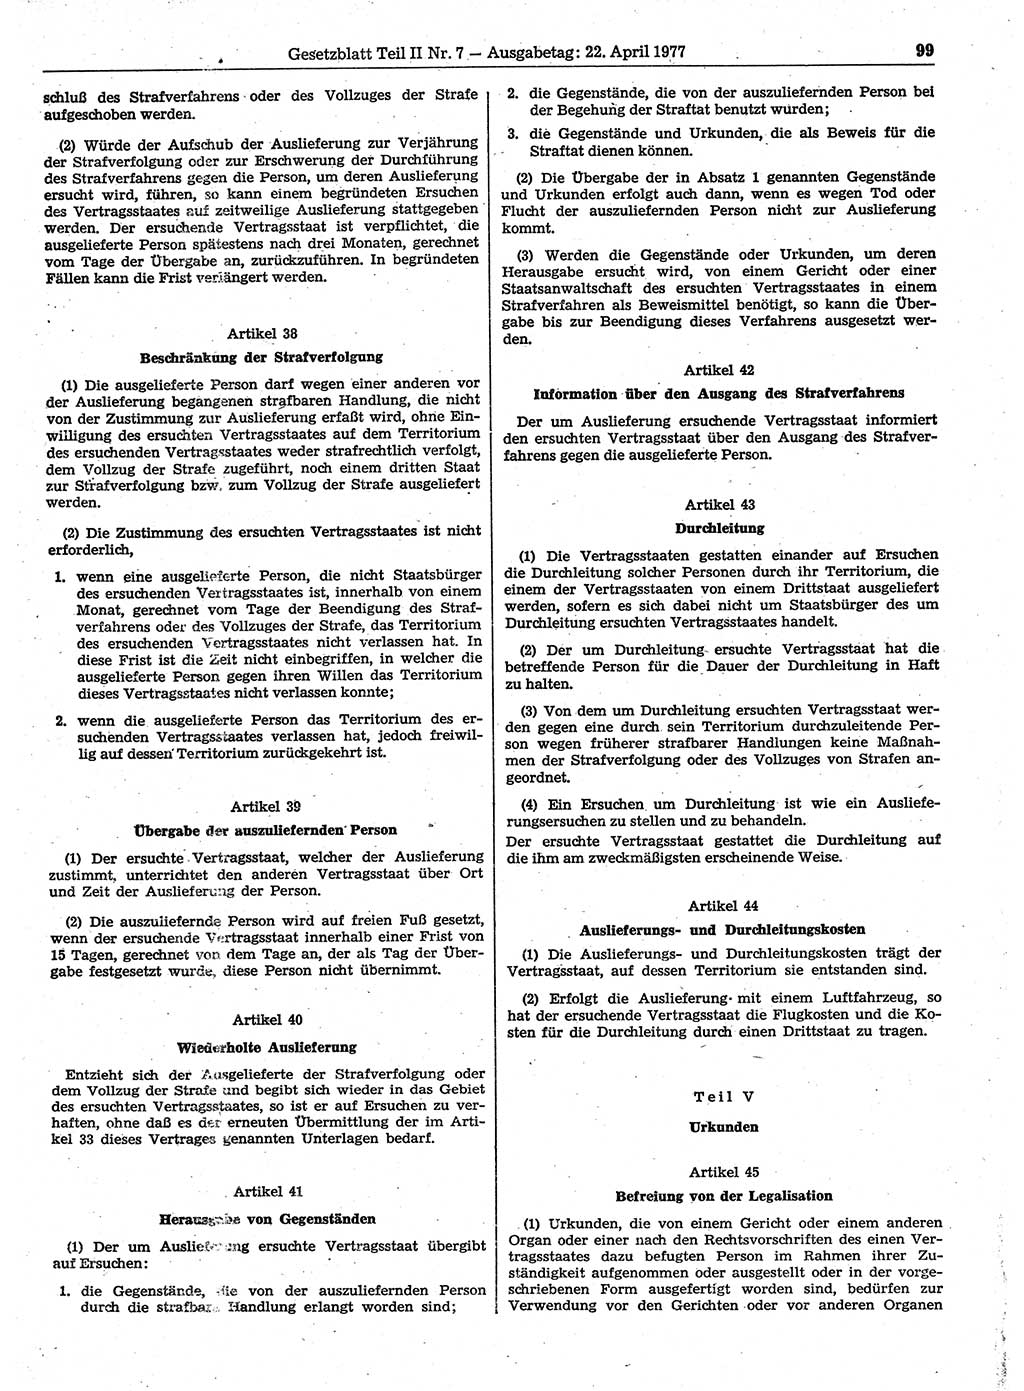 Gesetzblatt (GBl.) der Deutschen Demokratischen Republik (DDR) Teil ⅠⅠ 1977, Seite 99 (GBl. DDR ⅠⅠ 1977, S. 99)